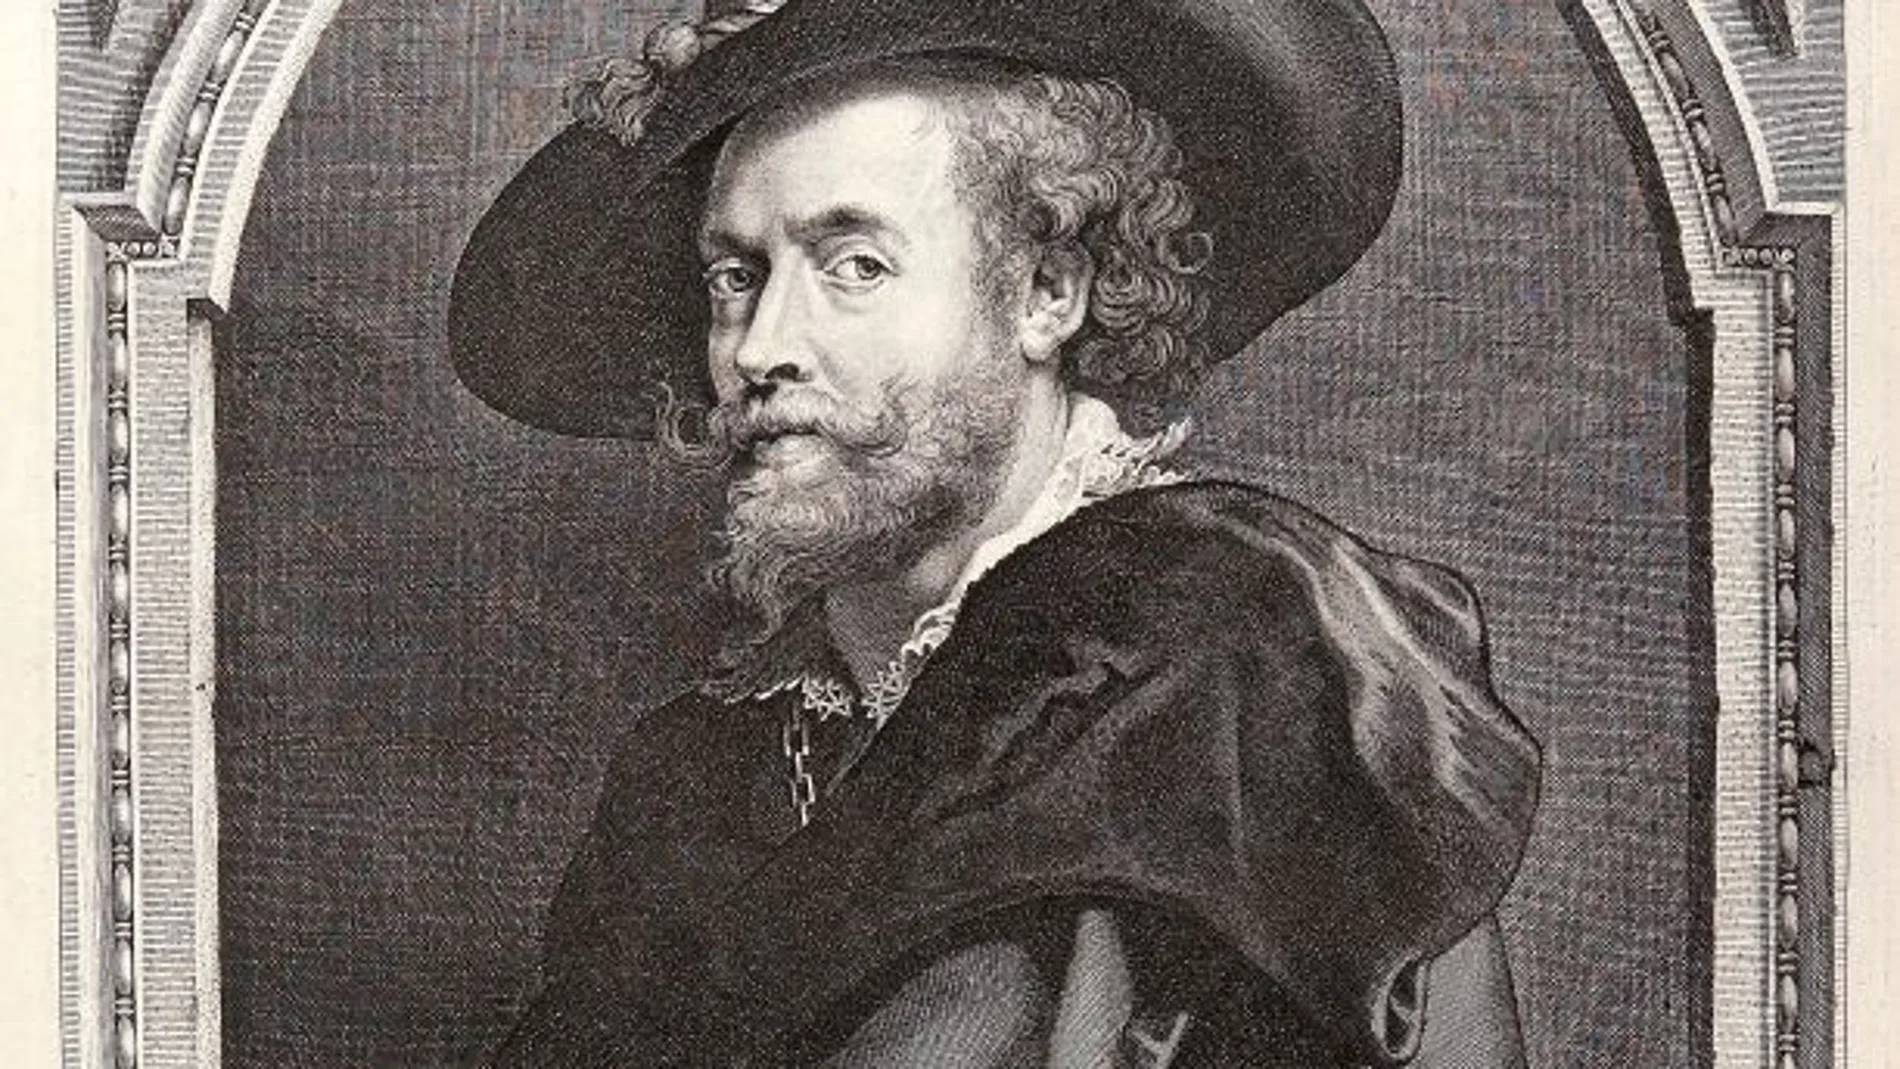 Este autorretrato de Rubens es uno de los grabados a buril que se muestran en la Biblioteca Nacional